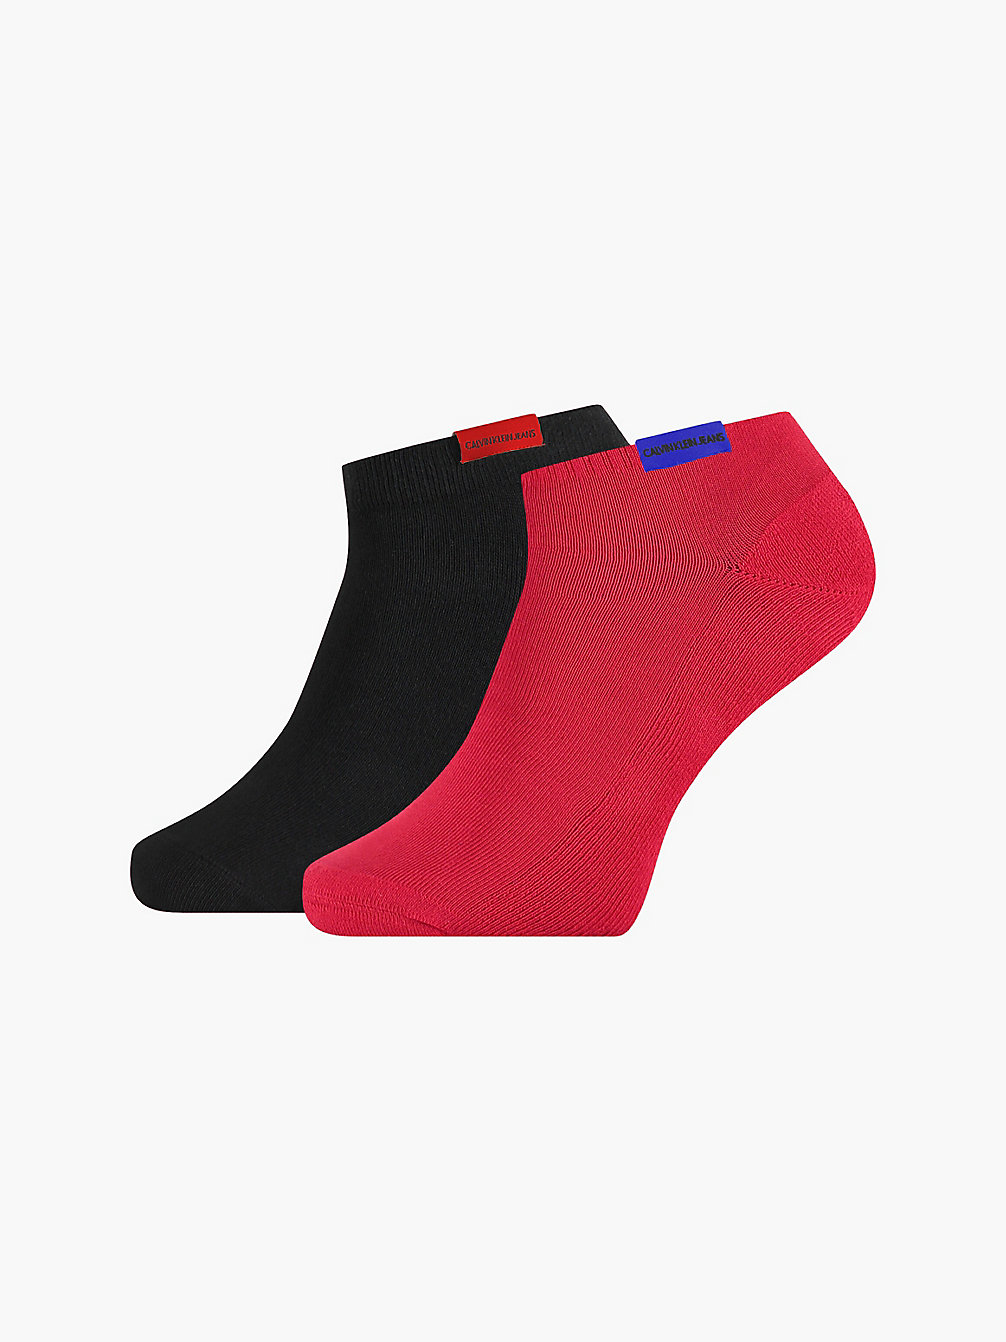 RED COMBO > Комплект носков длиной по щиколотку с логотипом 2 пары > undefined женщины - Calvin Klein